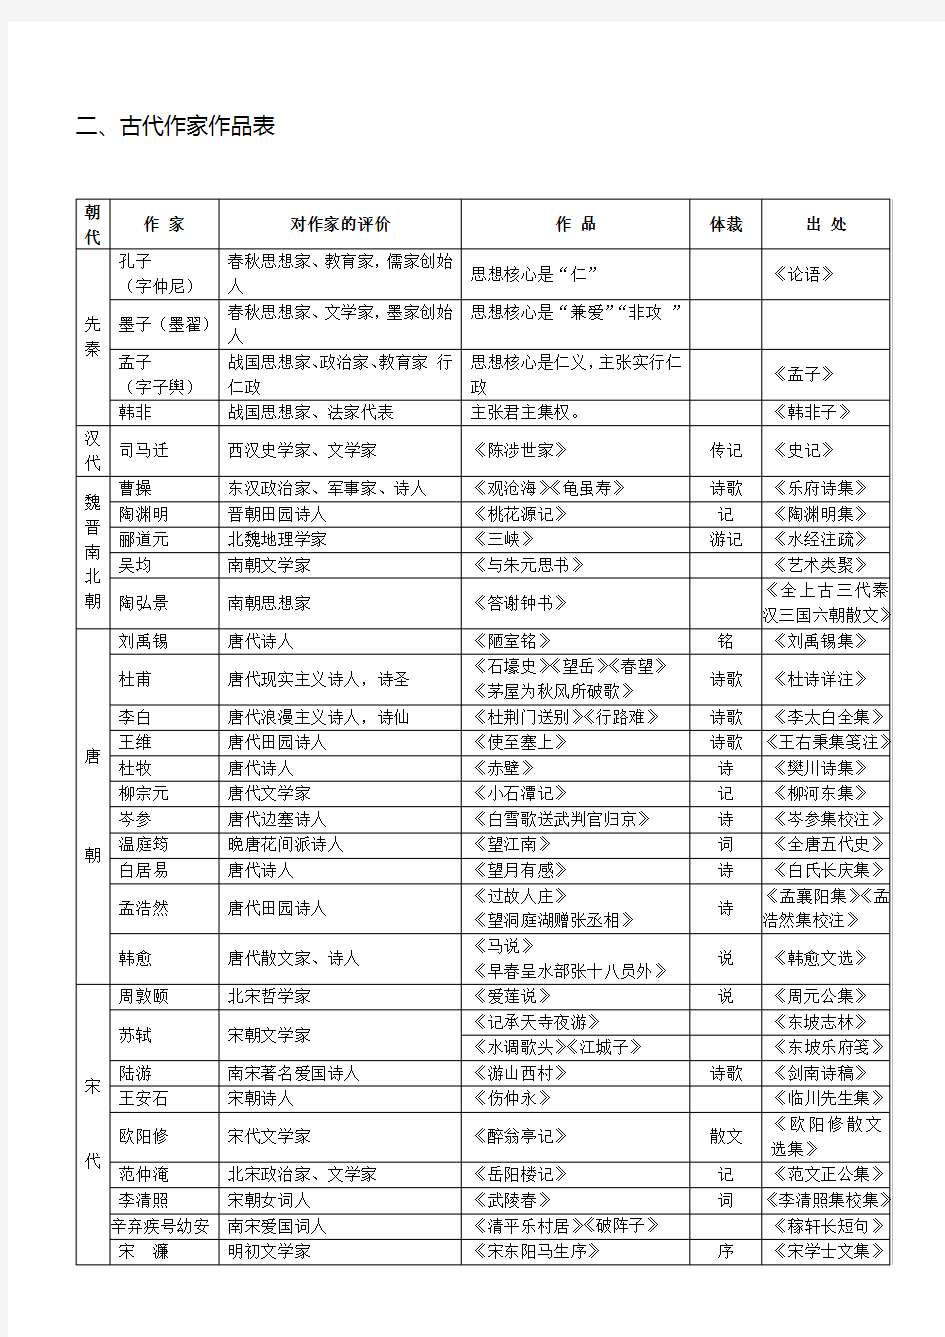 人教版初中语文文学常识一览表